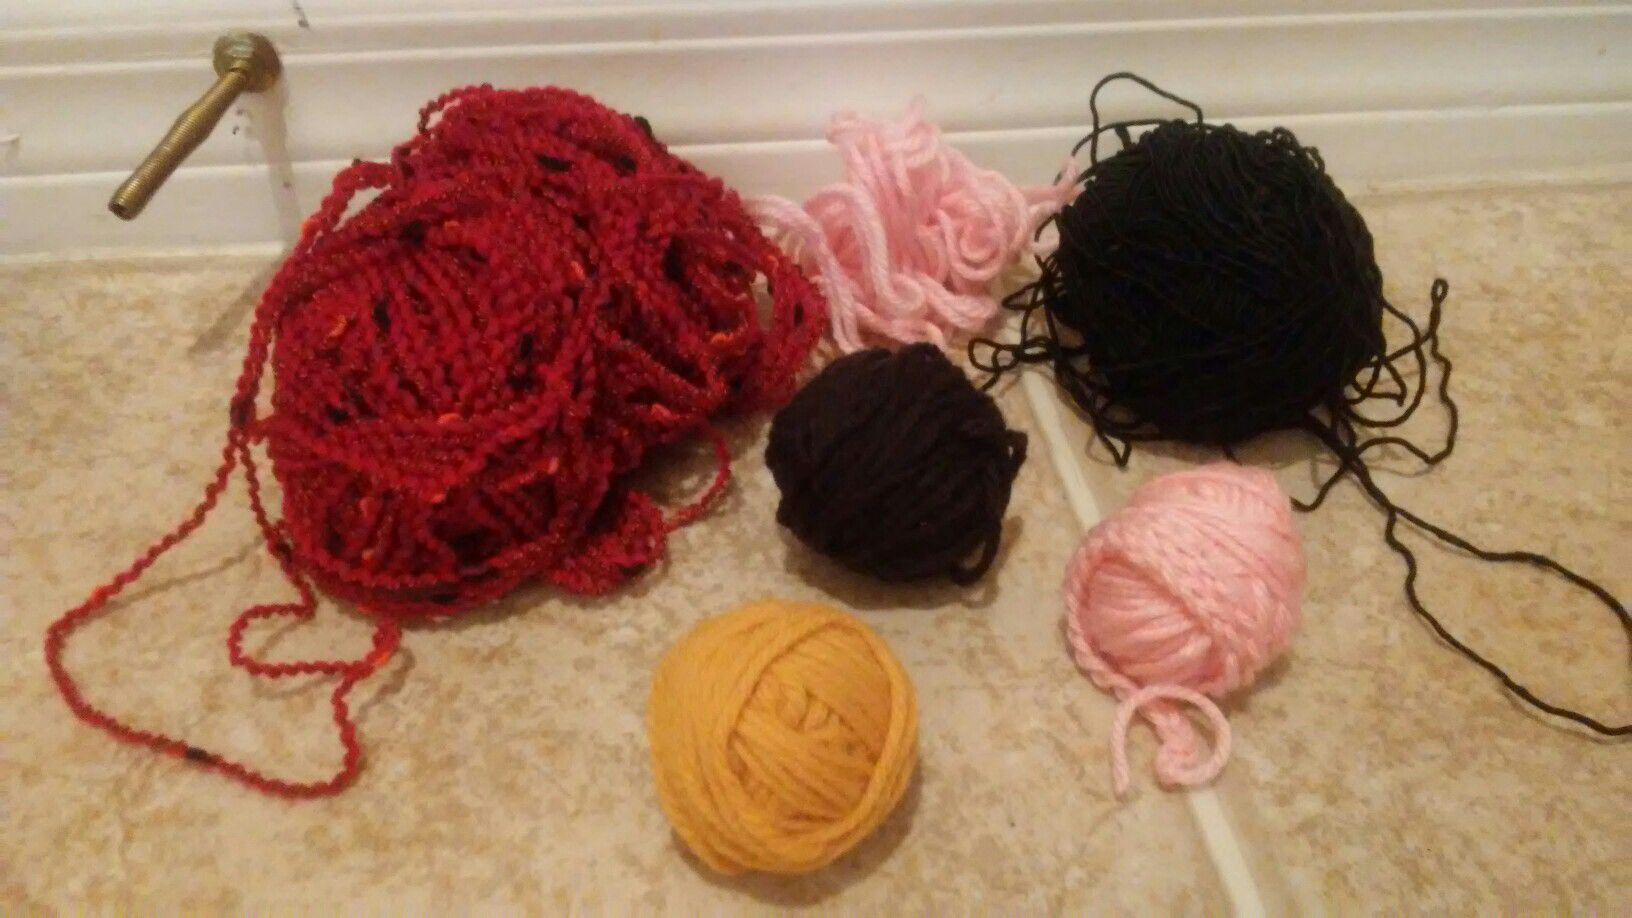 Assorted yarn